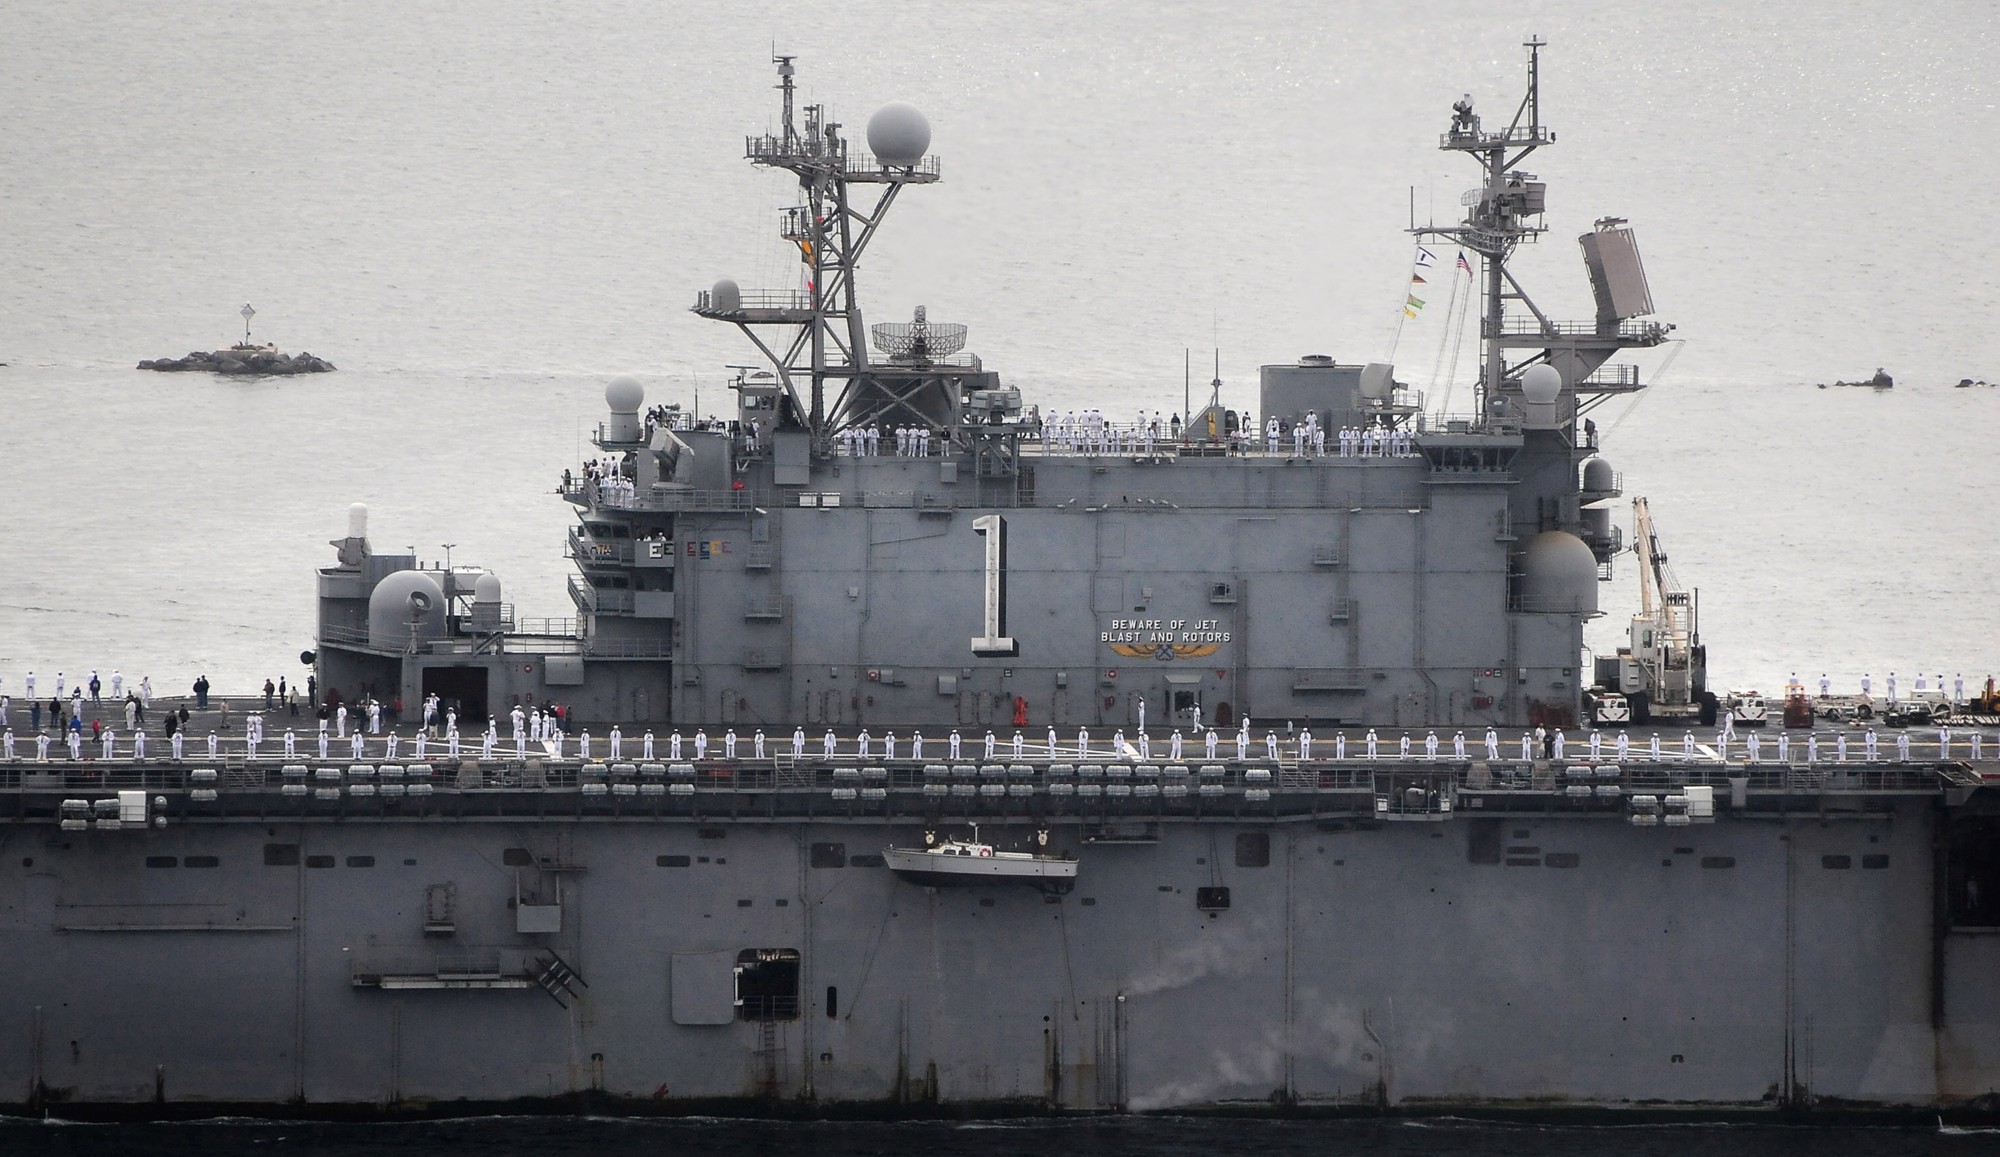 lha-1 uss tarawa amphibious assault ship us navy 52 final homecoming san diego